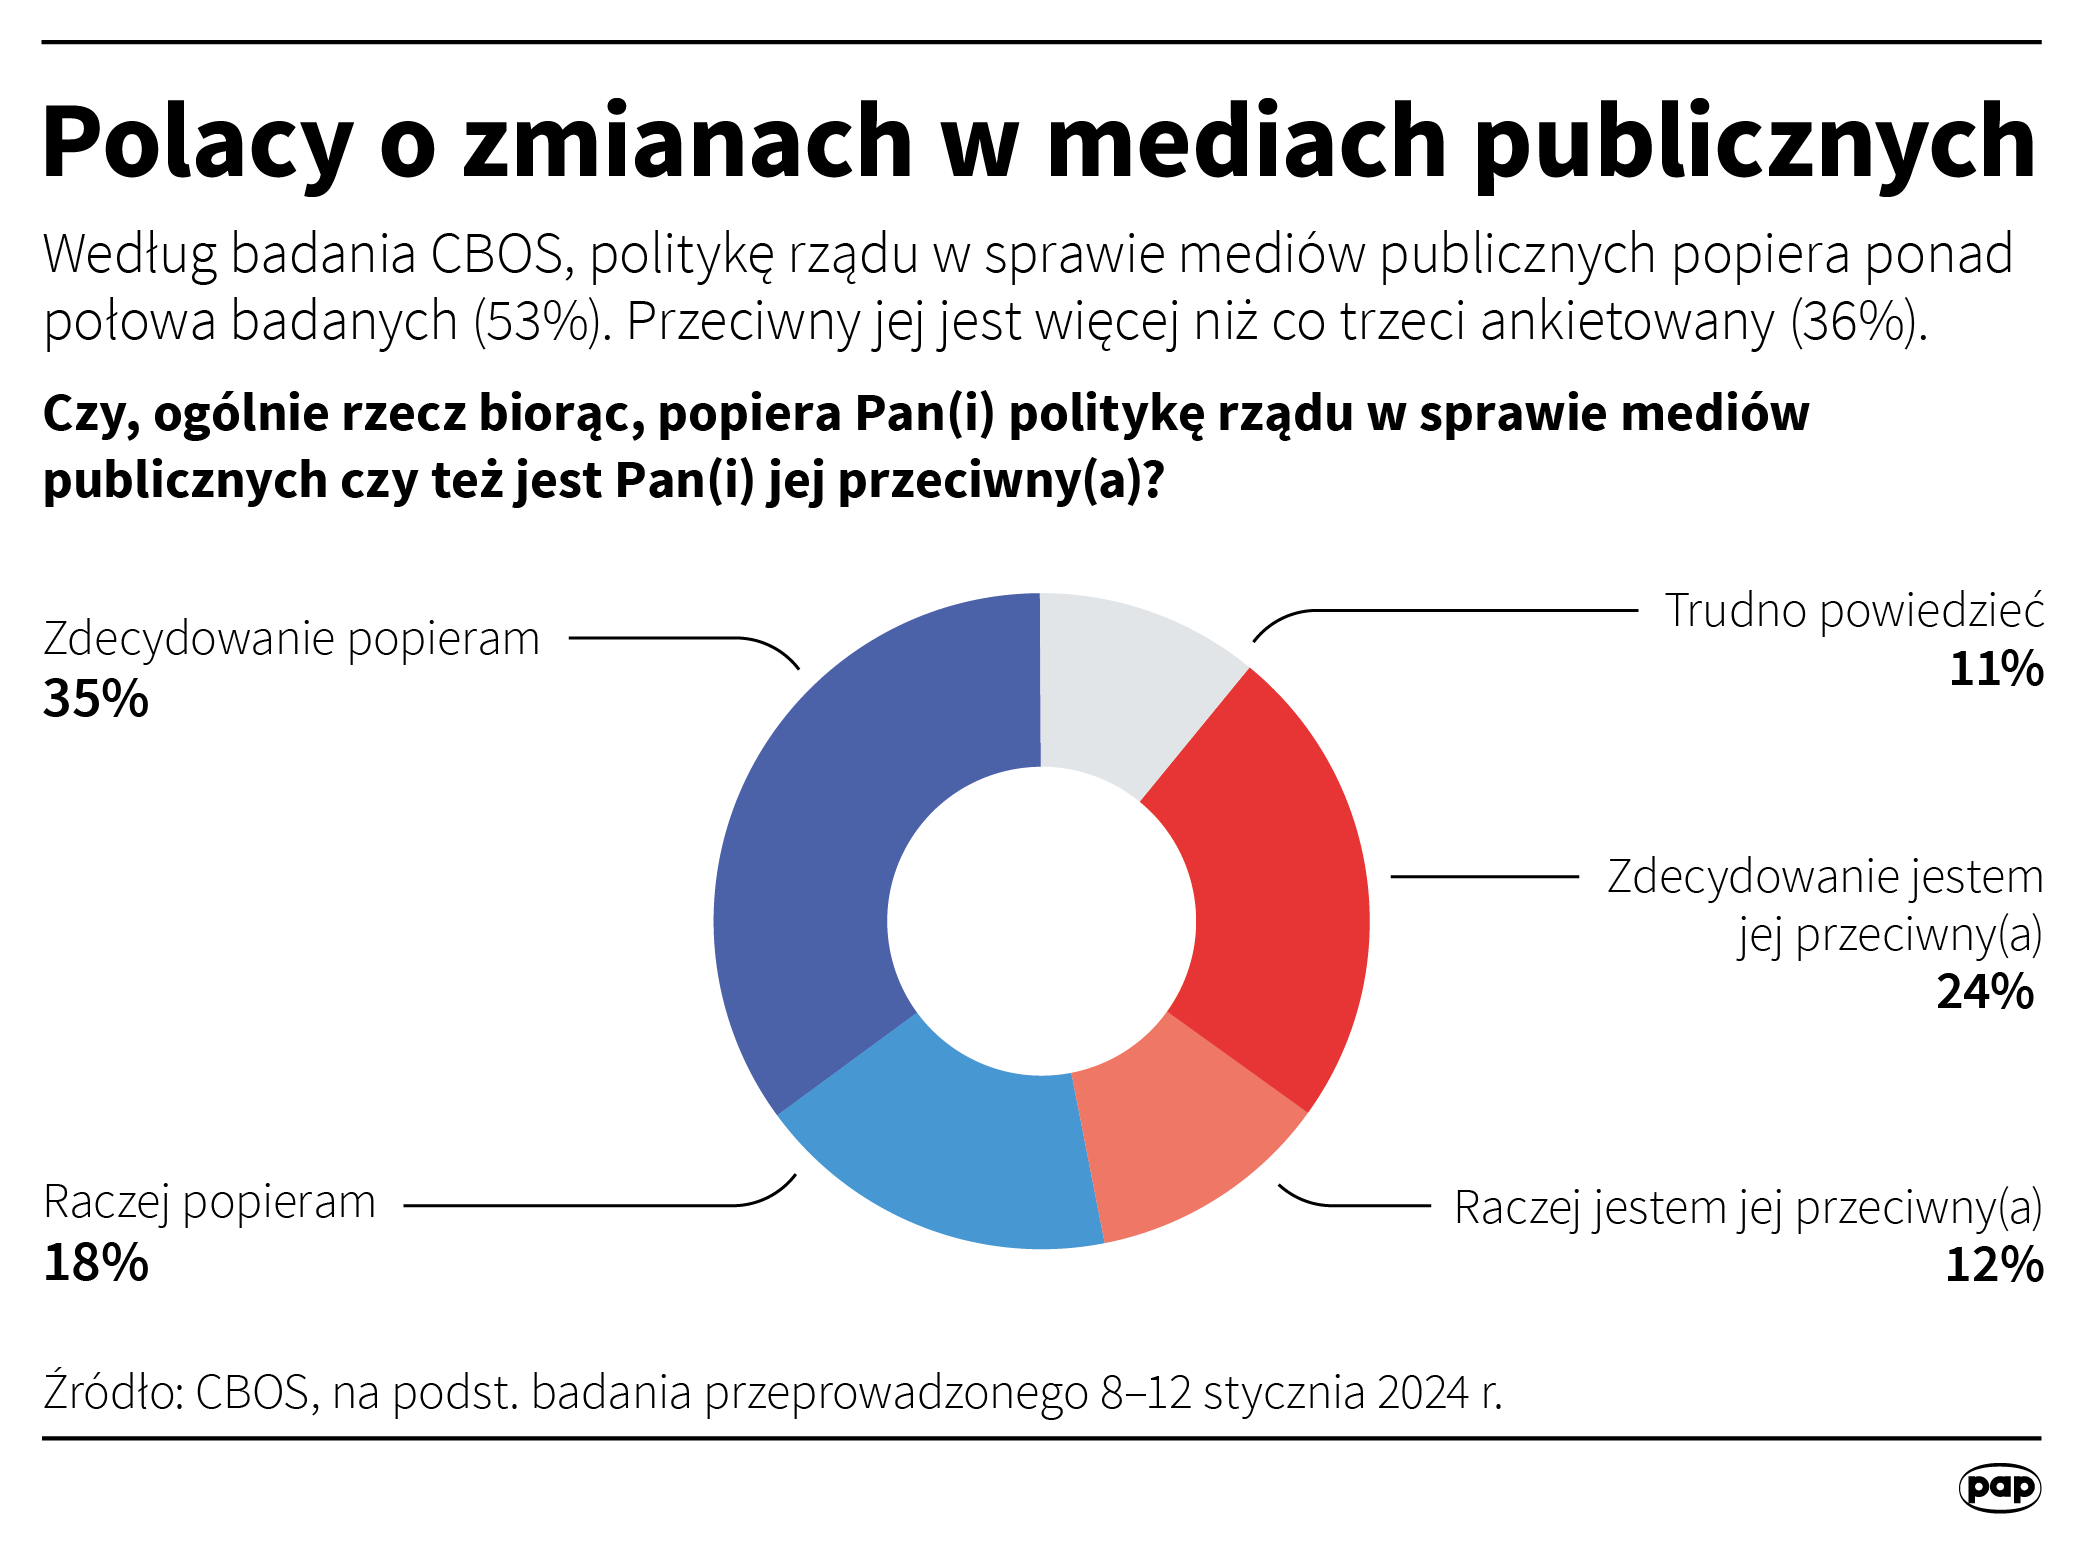 CBOS: Polacy są podzielni w ocenie zmian w mediach publicznych ...